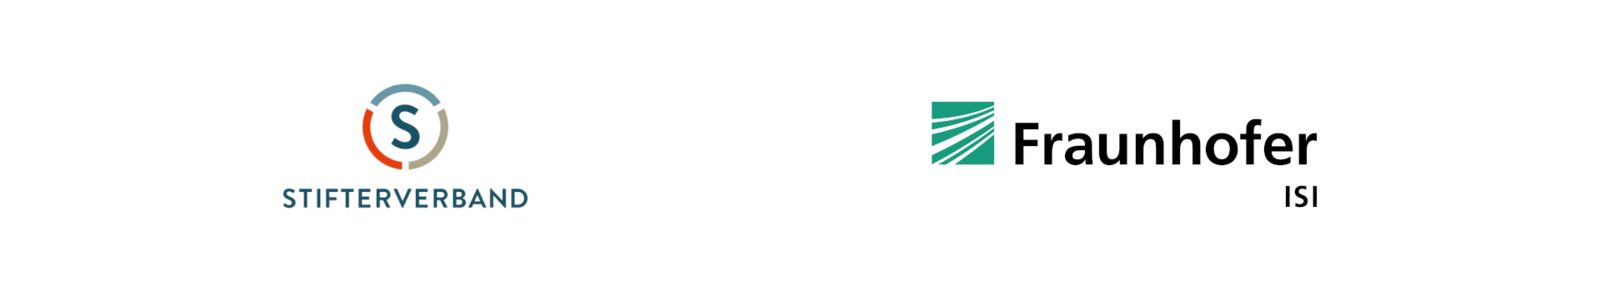 Fraunhofer ISI Logo + Stiftungsverband Logo